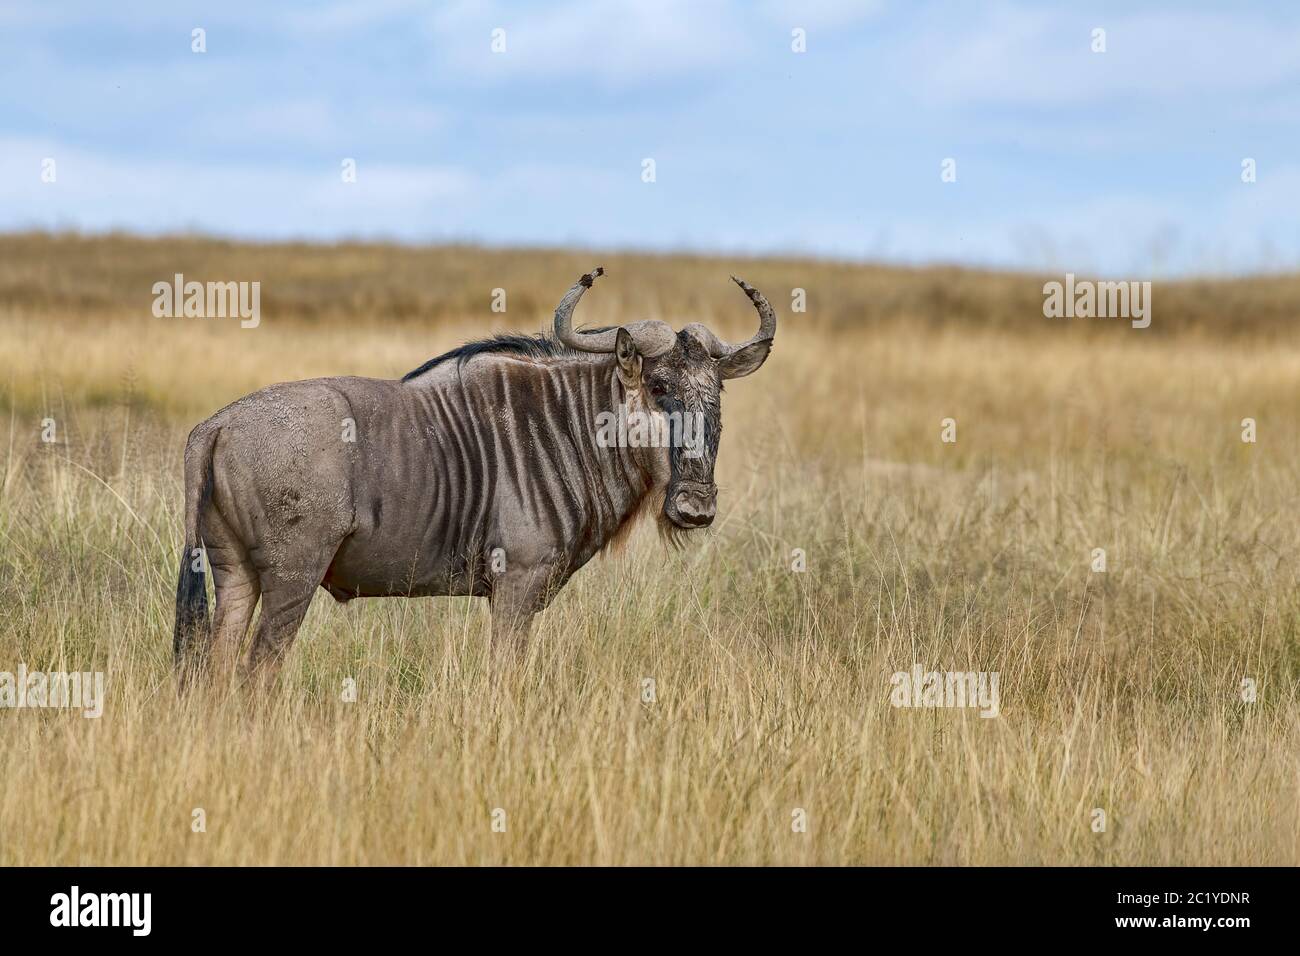 Kenya-Amboseli-Gnu-2018 4795 Stock Photo